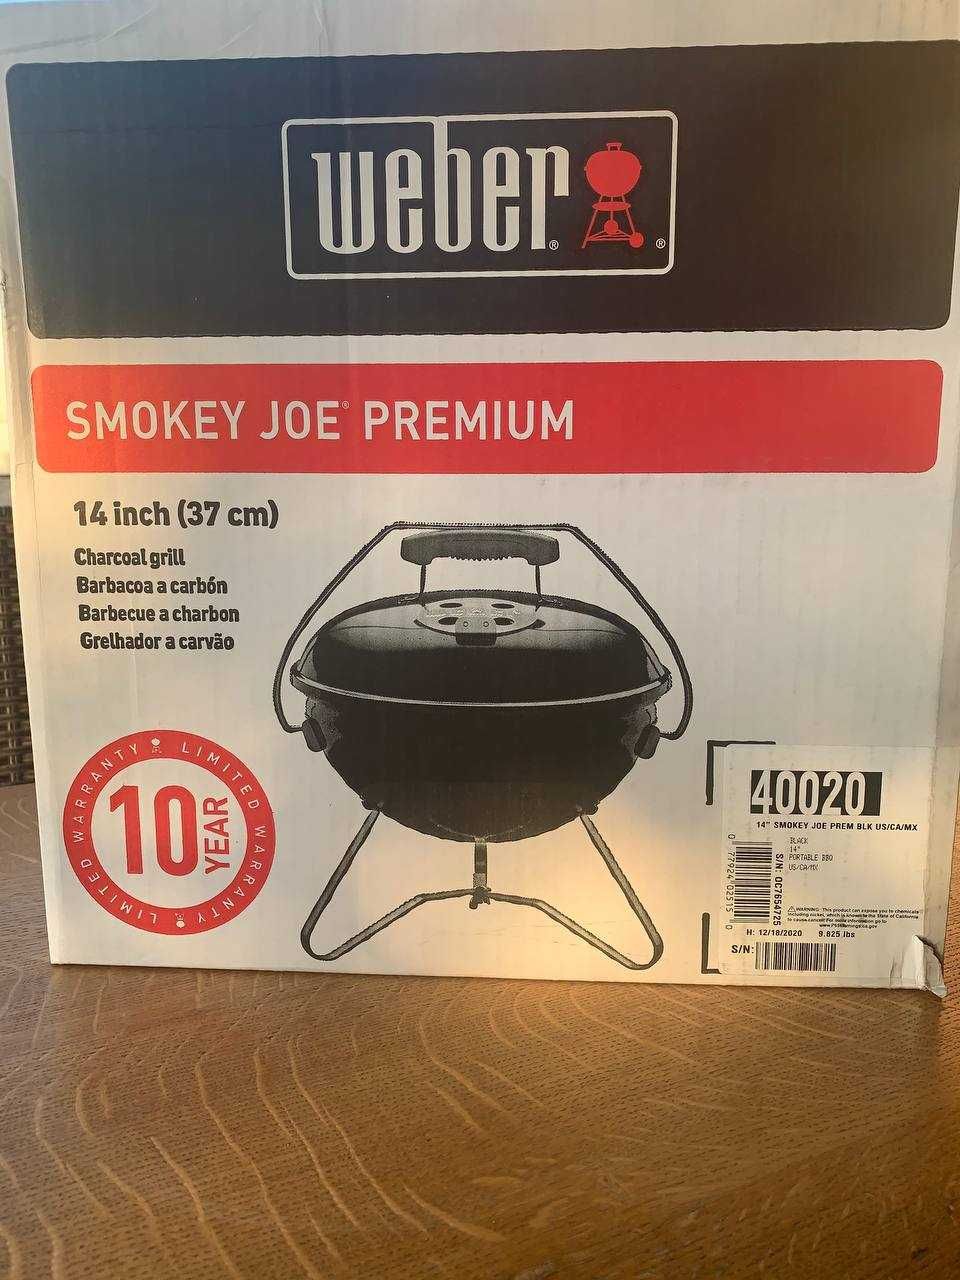 НОВЫЙ Портативный угольный гриль Smokey-Joe Premium Weber